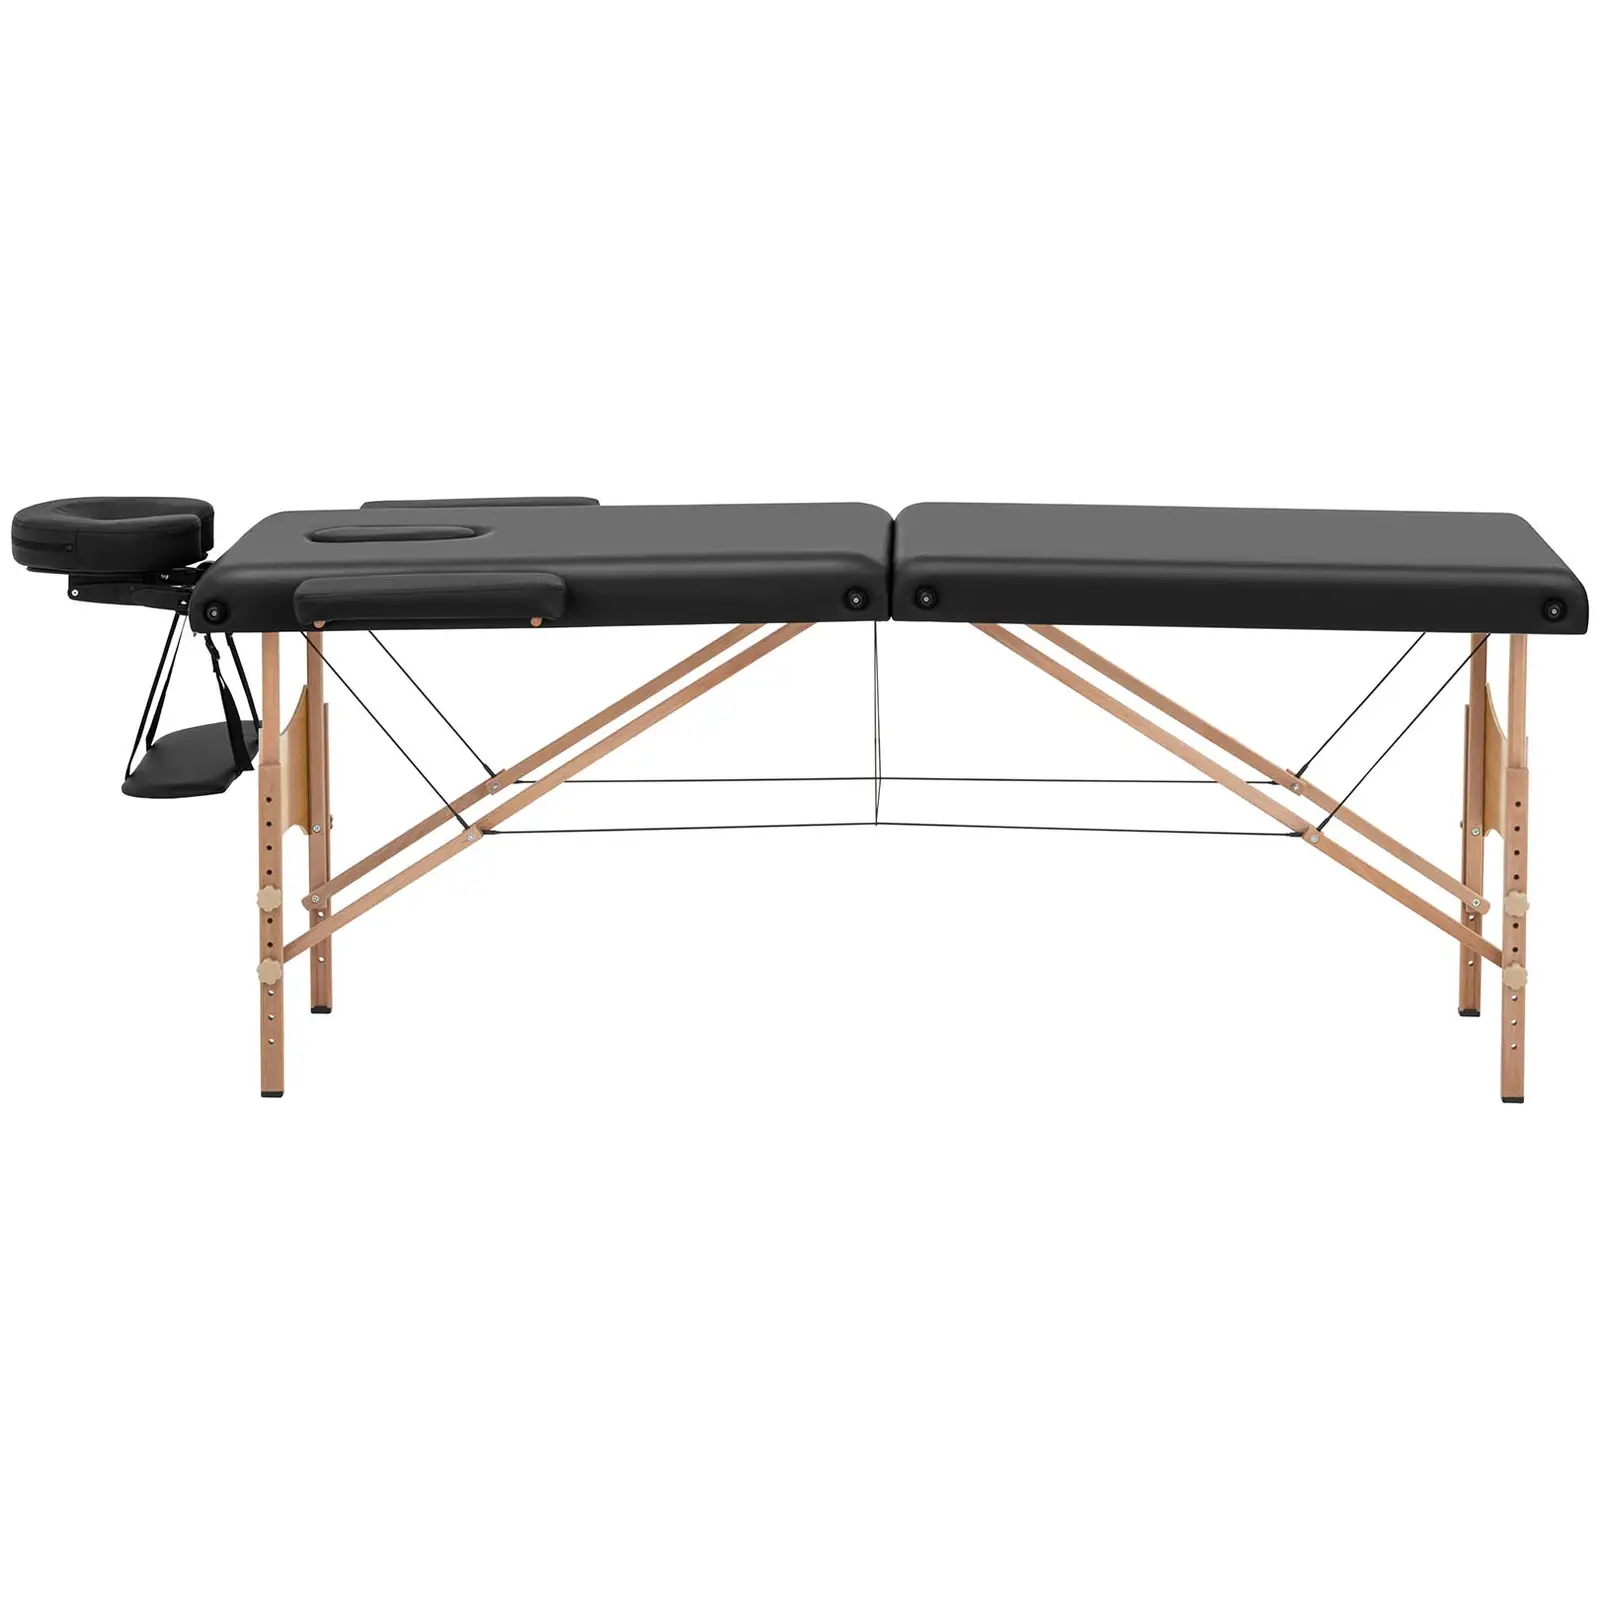 Zložljiva masažna miza - zelo široka (70 cm) - nagibno naslonjalo za glavo in noge - bukov les - črna